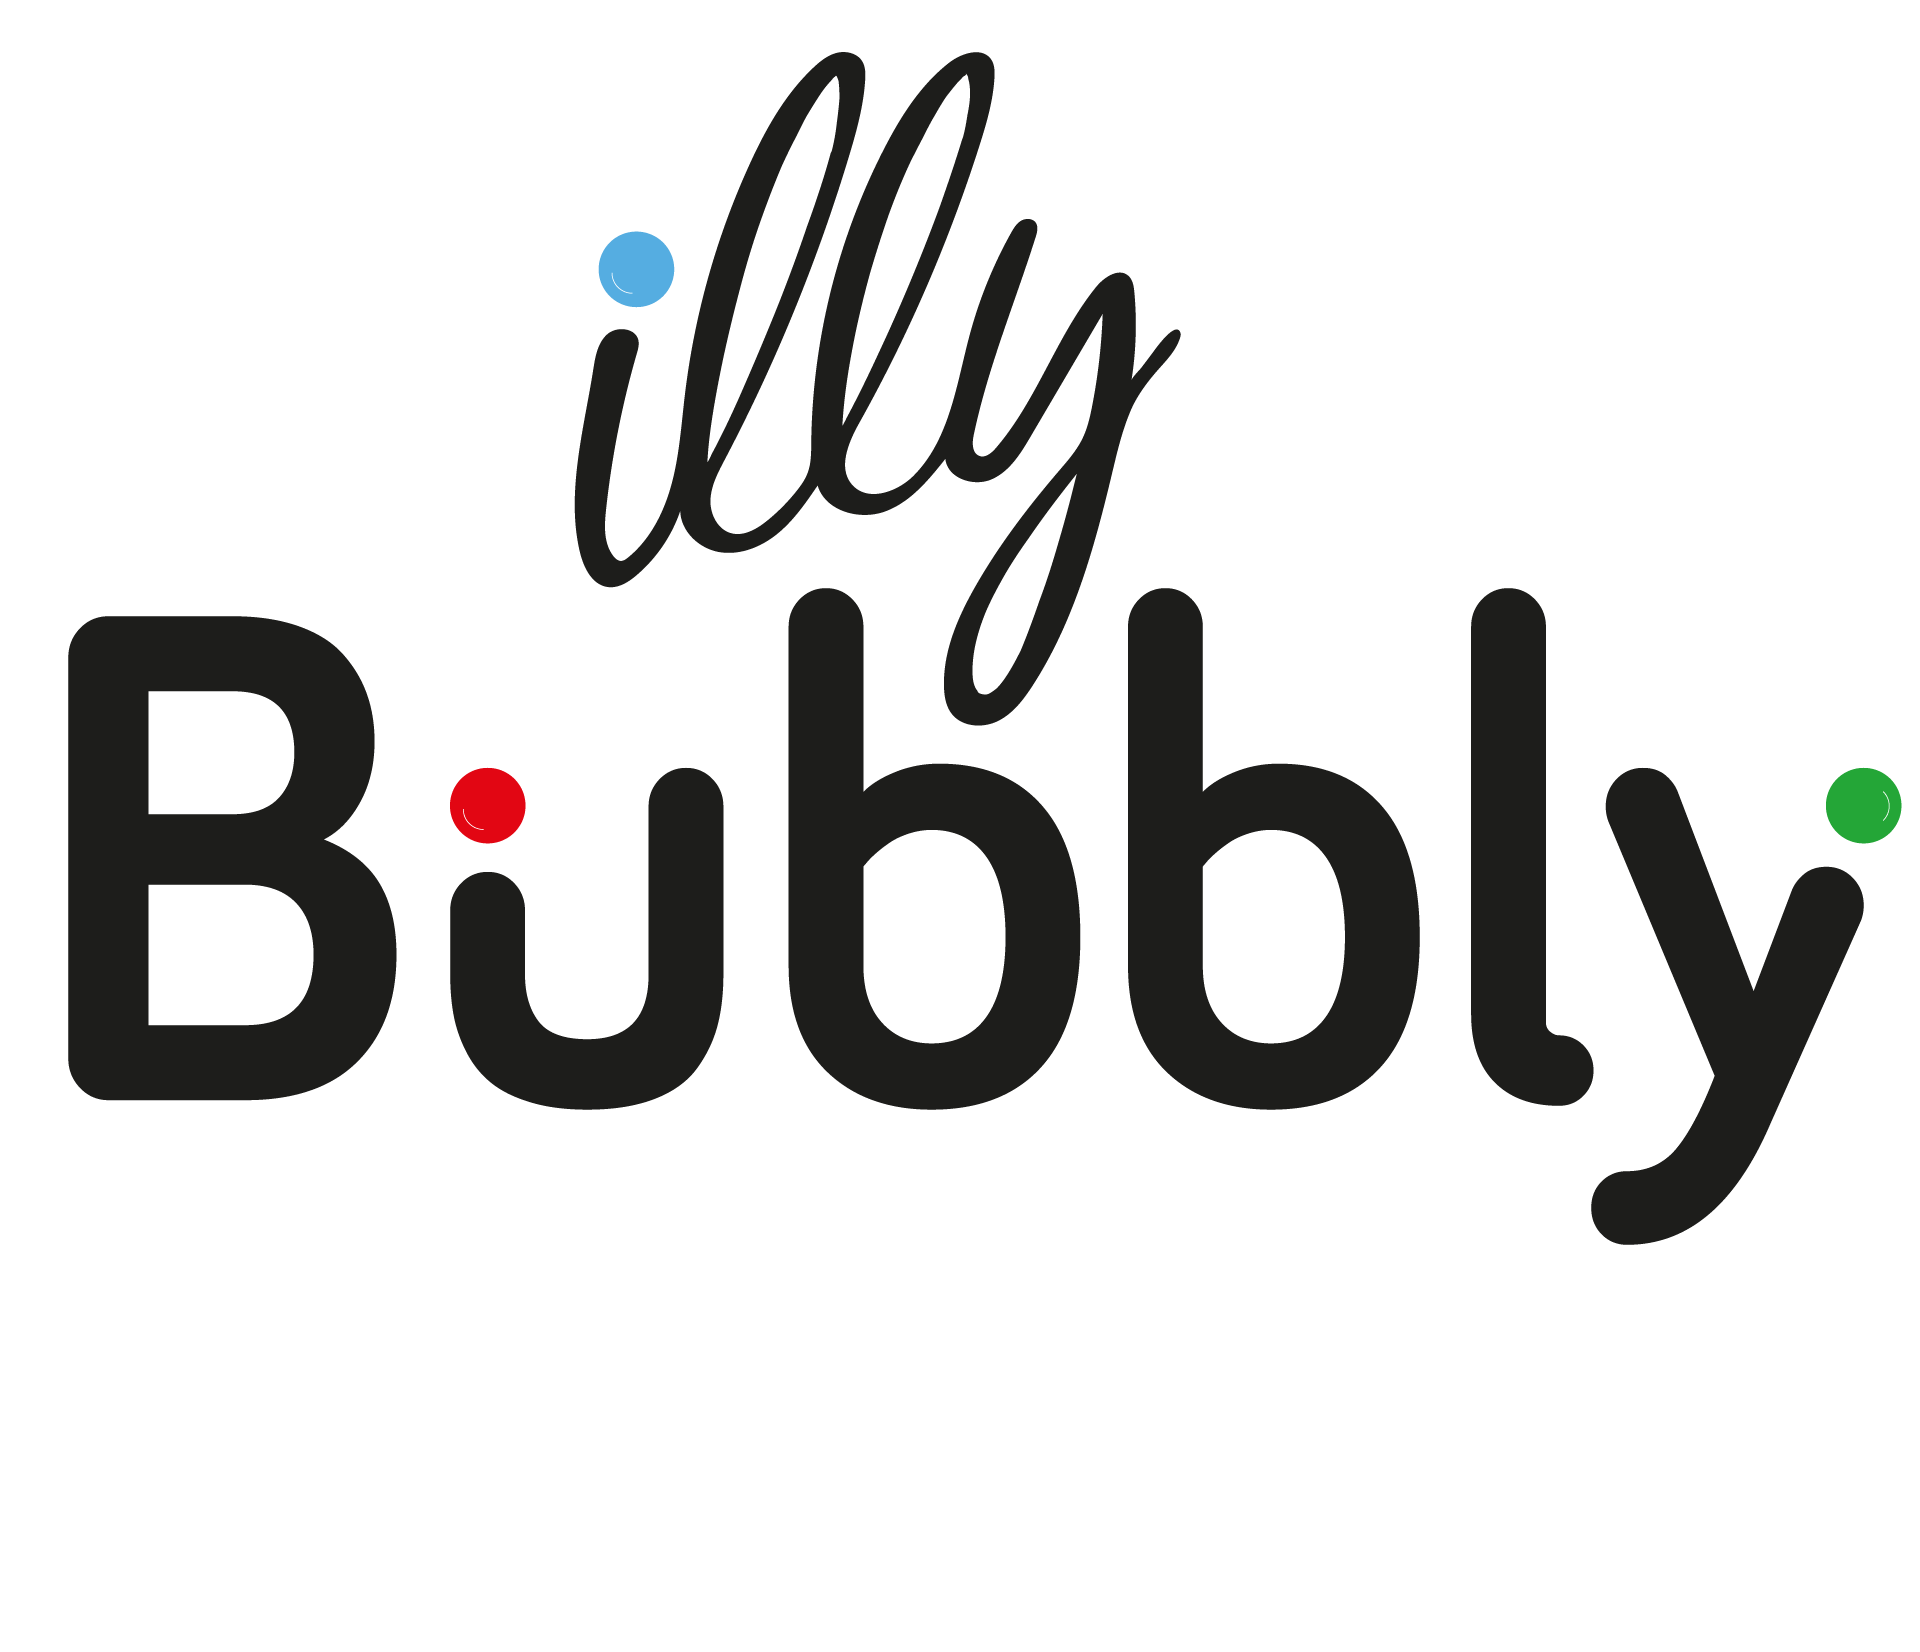 Illy bubbly